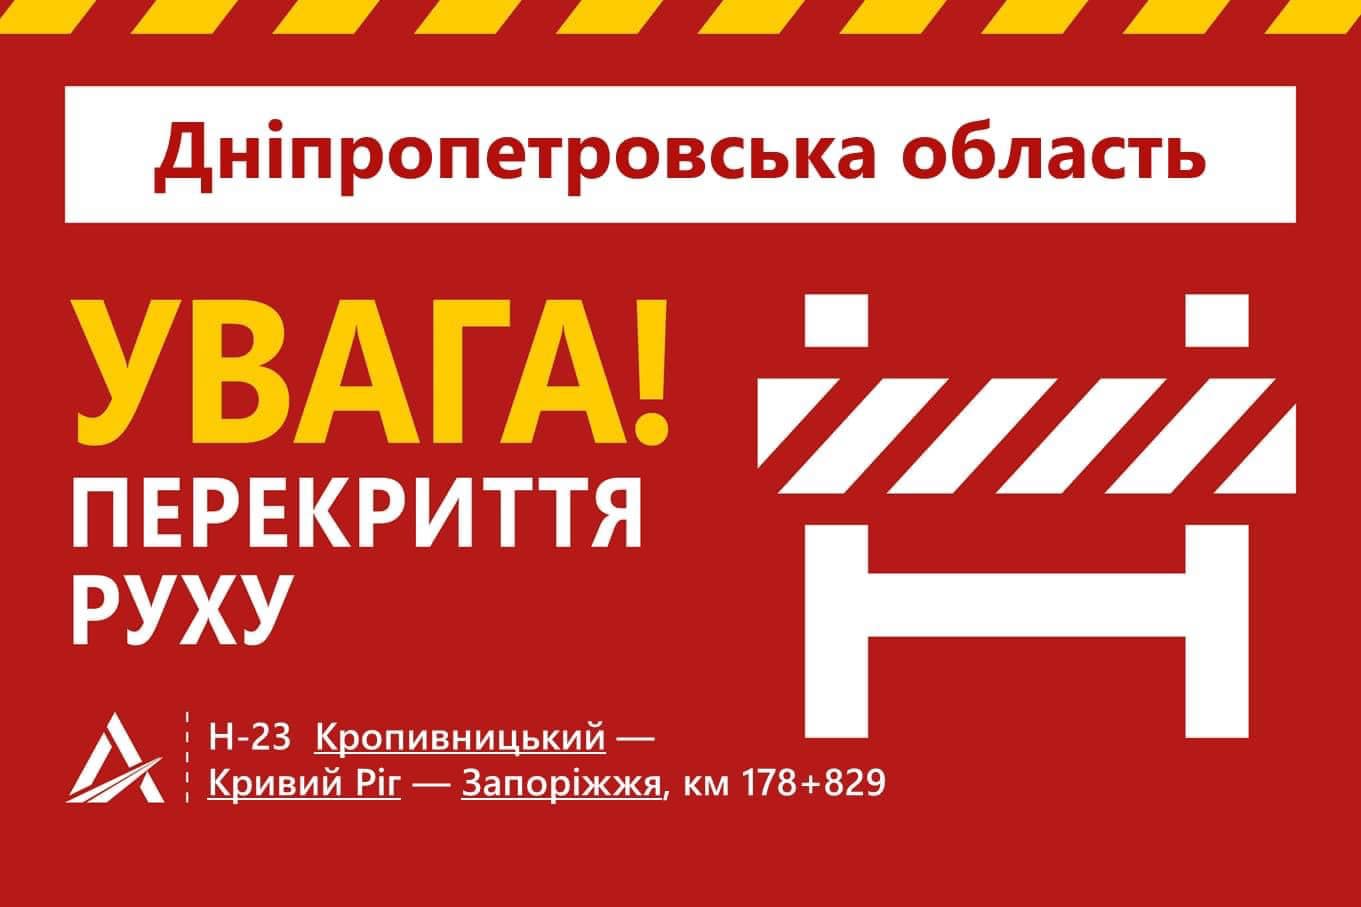 Внимание! Перекрыто движение на трассе Никополь-Кривой Рог на участке Чертомлык-Марьянское